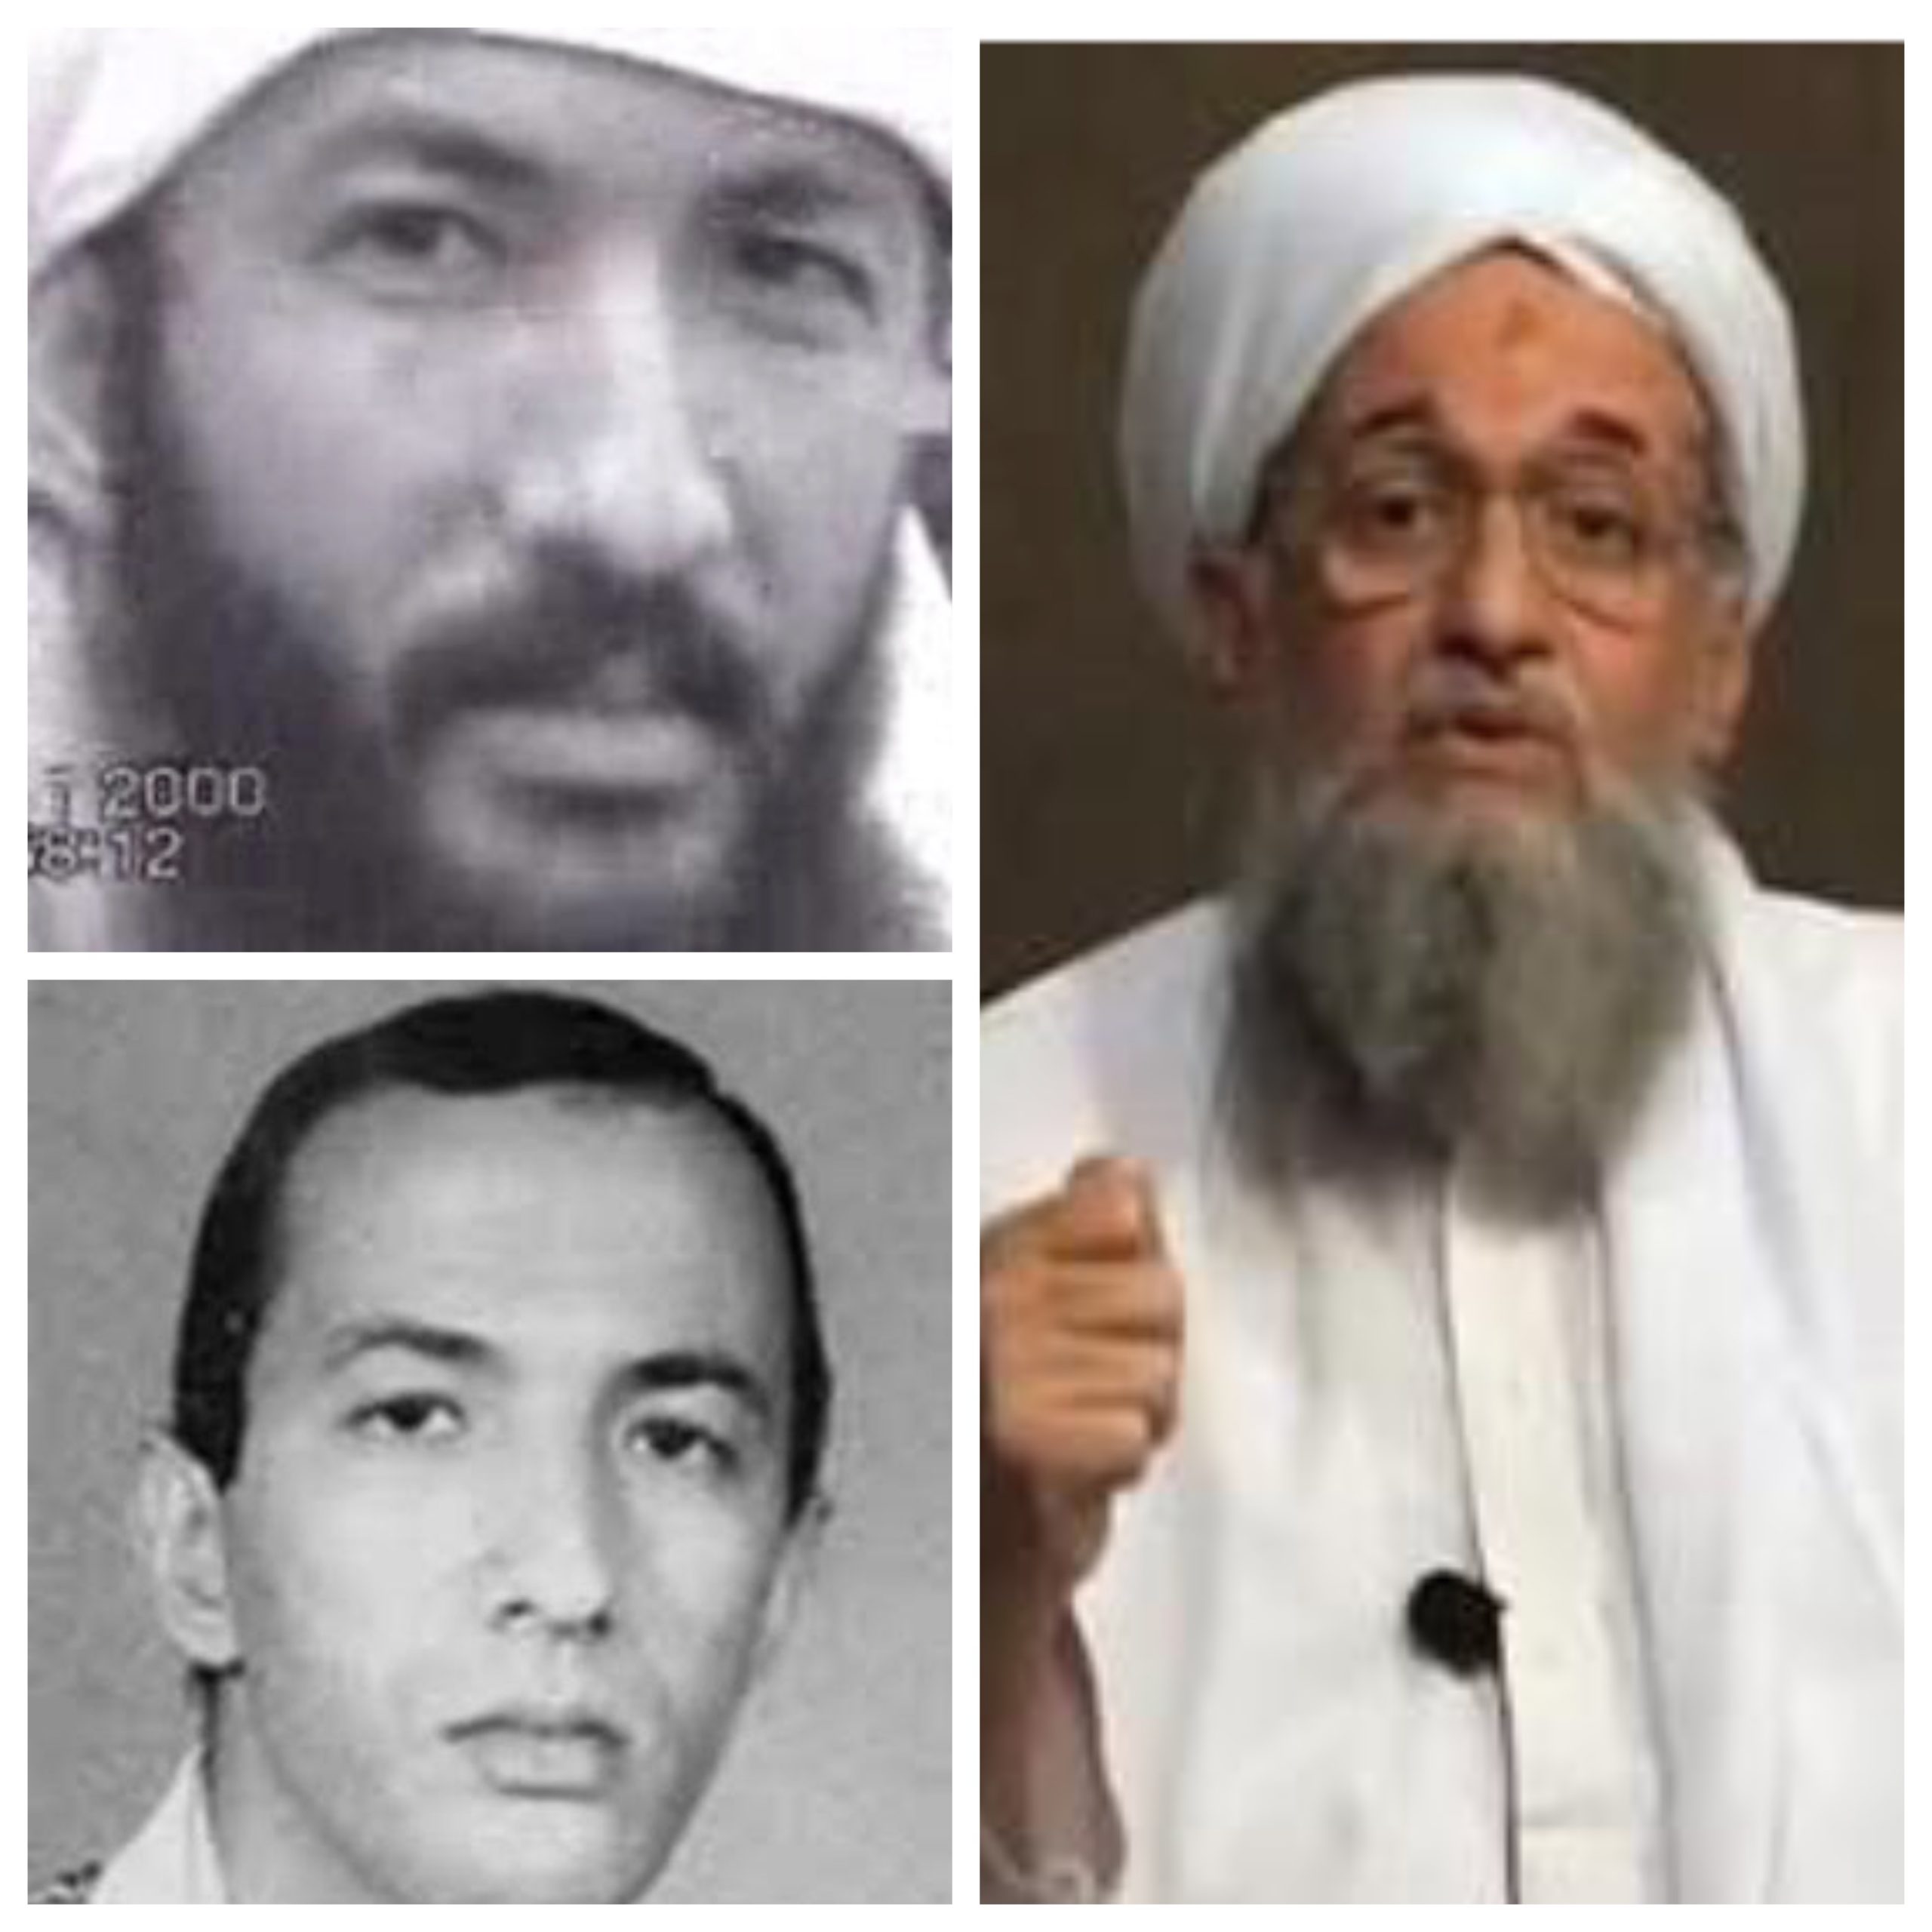 Al Qaeda: morto al Zawahiri, al suo posto Saif al Adel